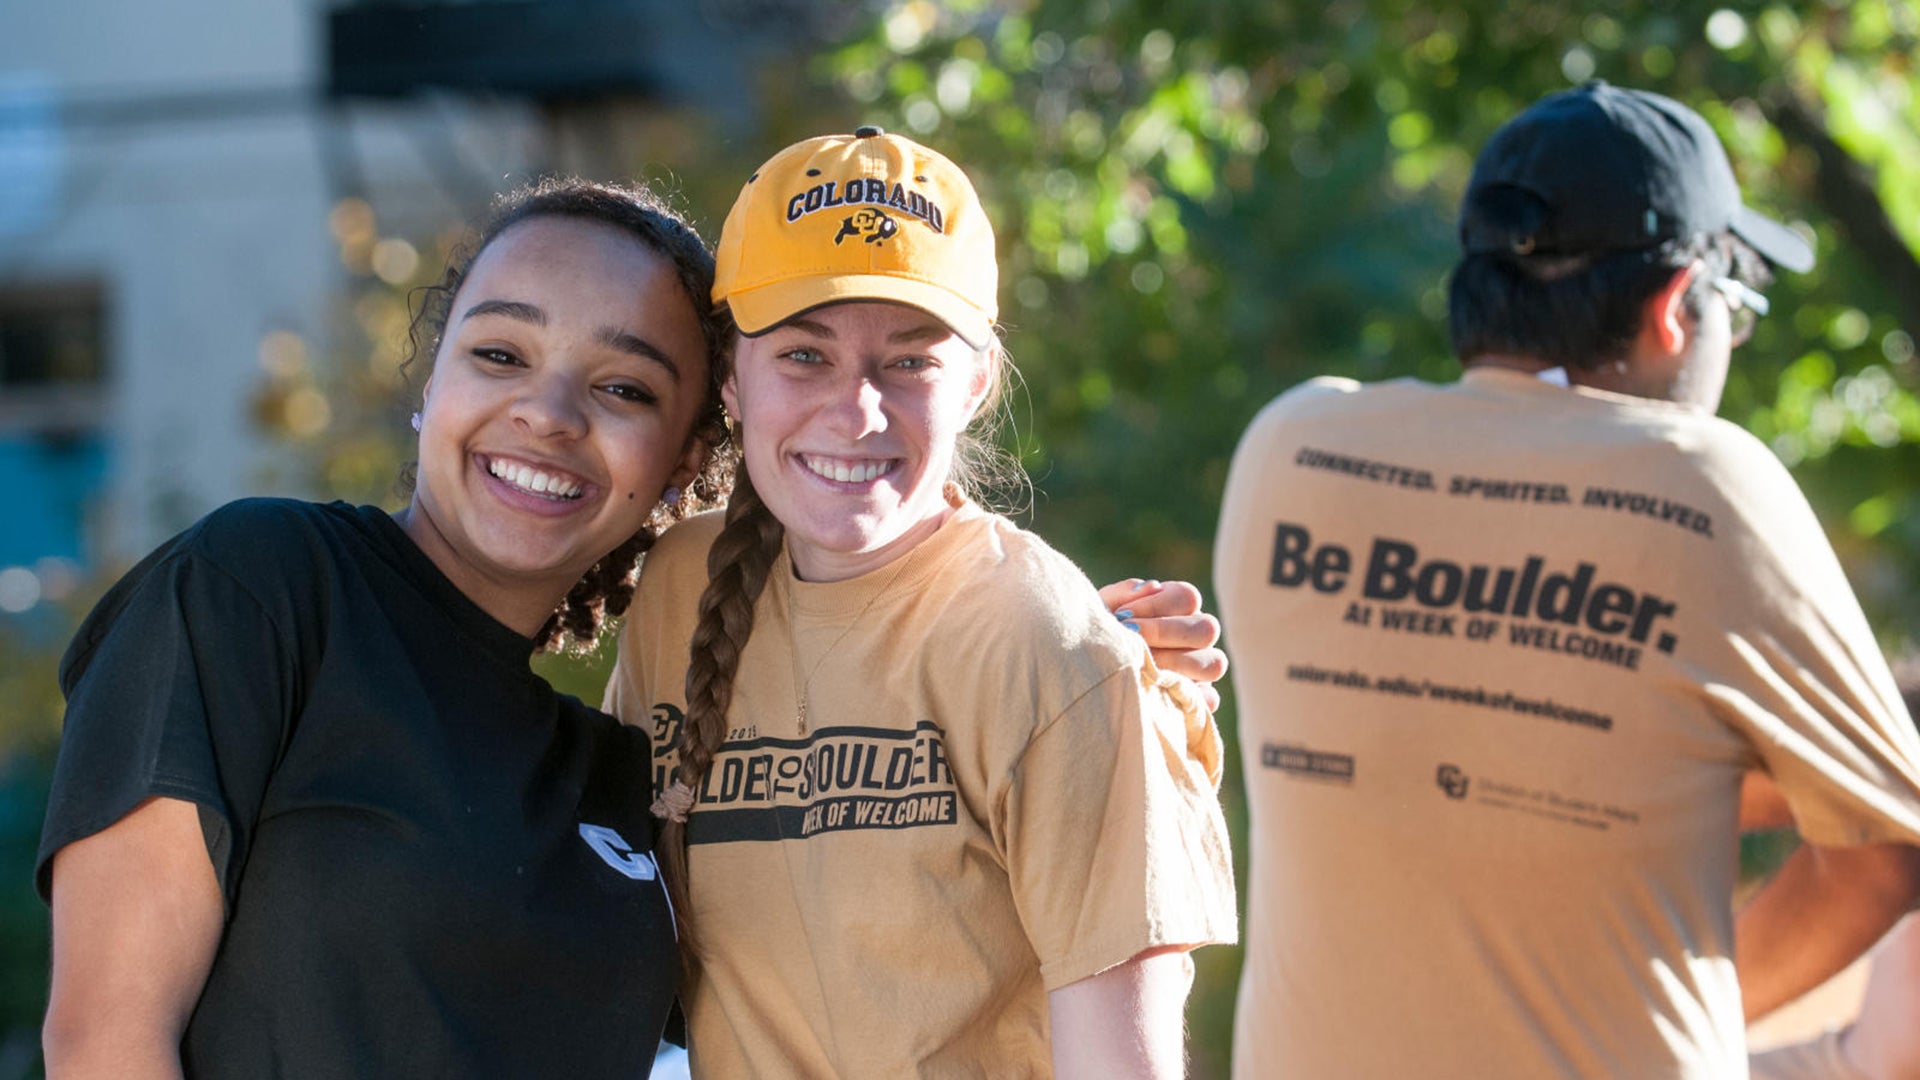 Two CU Boulder alumni hugging at a volunteer event